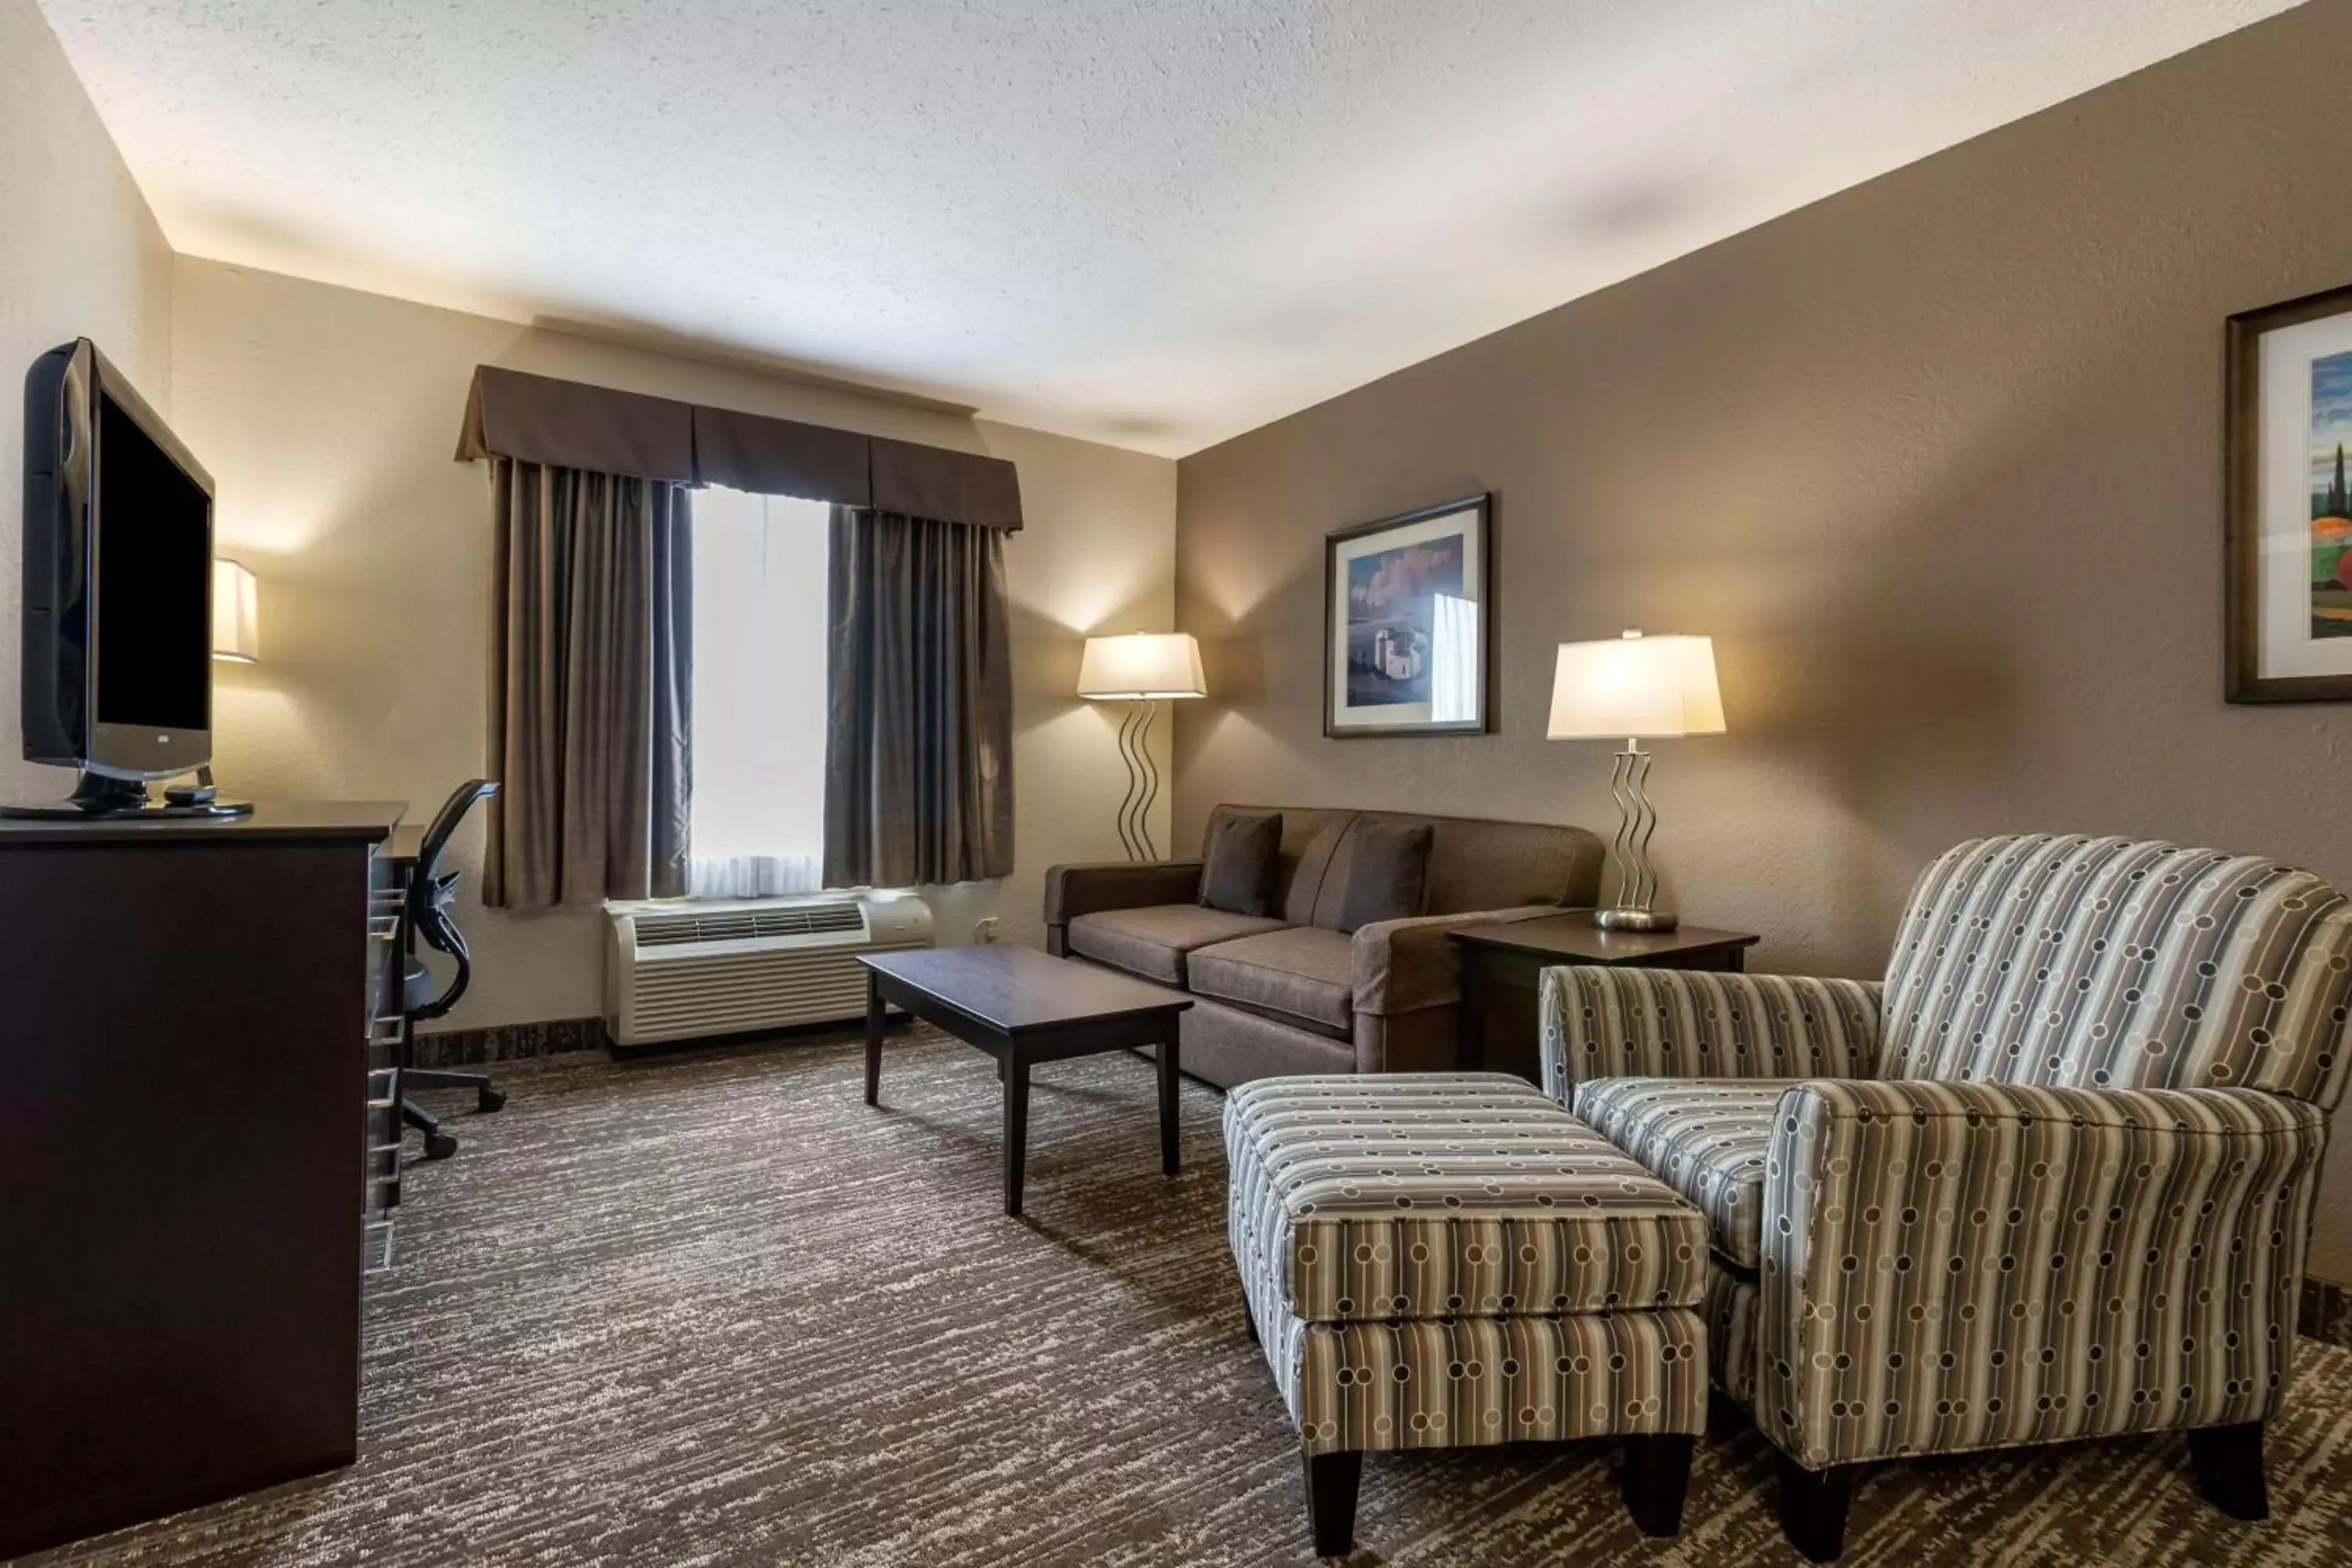 Bedroom, Seating Area in Best Western Plus Pembina Inn & Suites